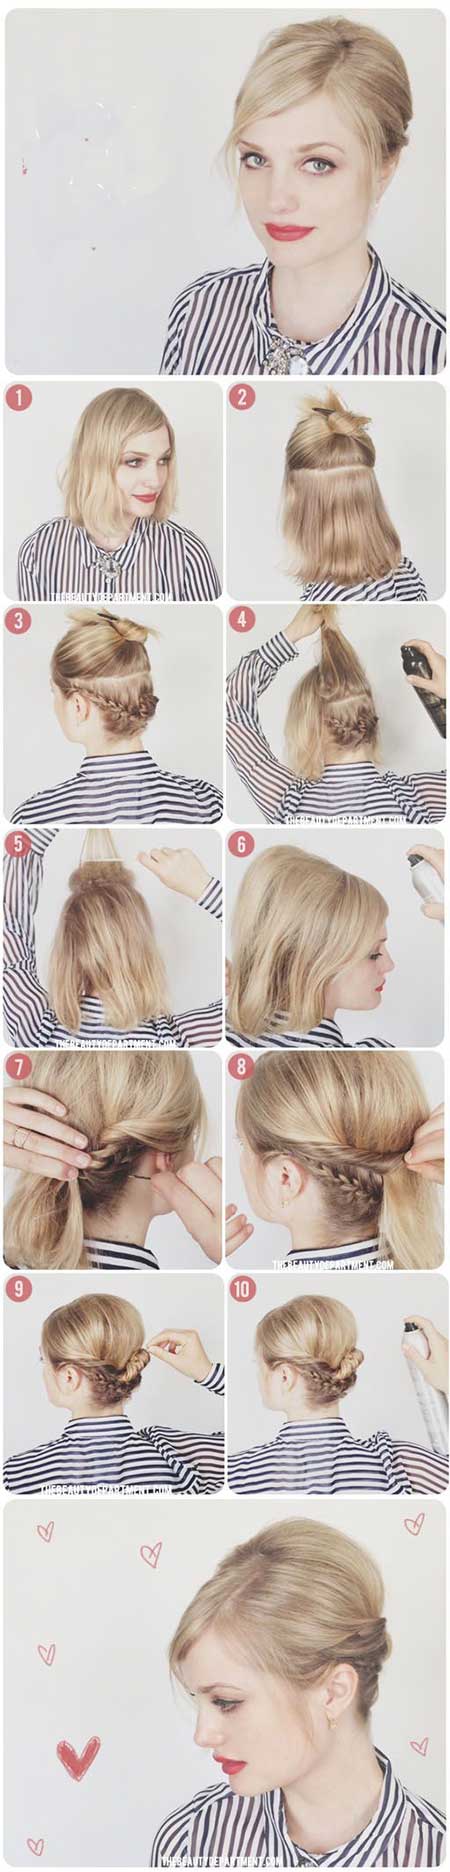 آموزش بستن مو به دو شکل زیبا و ساده